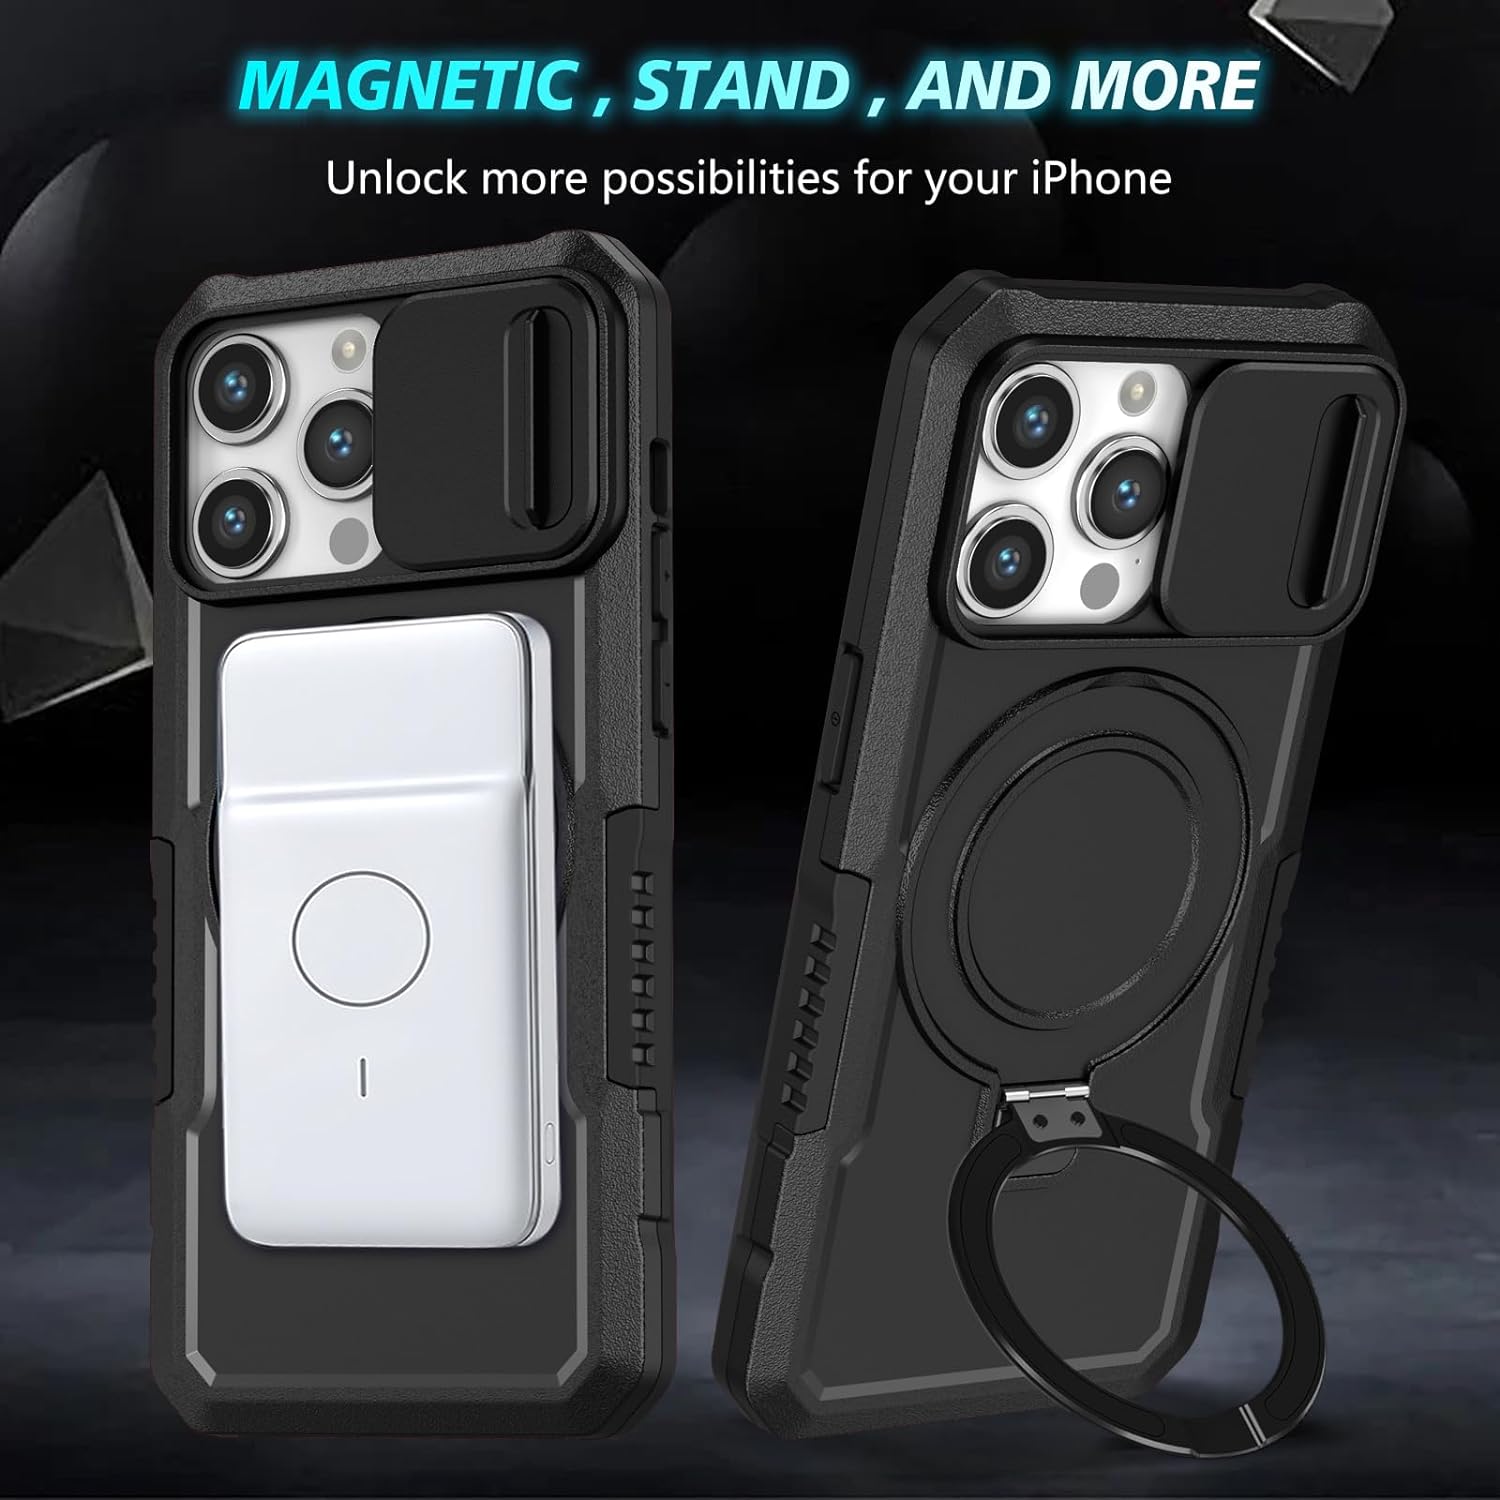 Verschuifbare camerahoes met MagSafe-achterstandaard voor iPhone